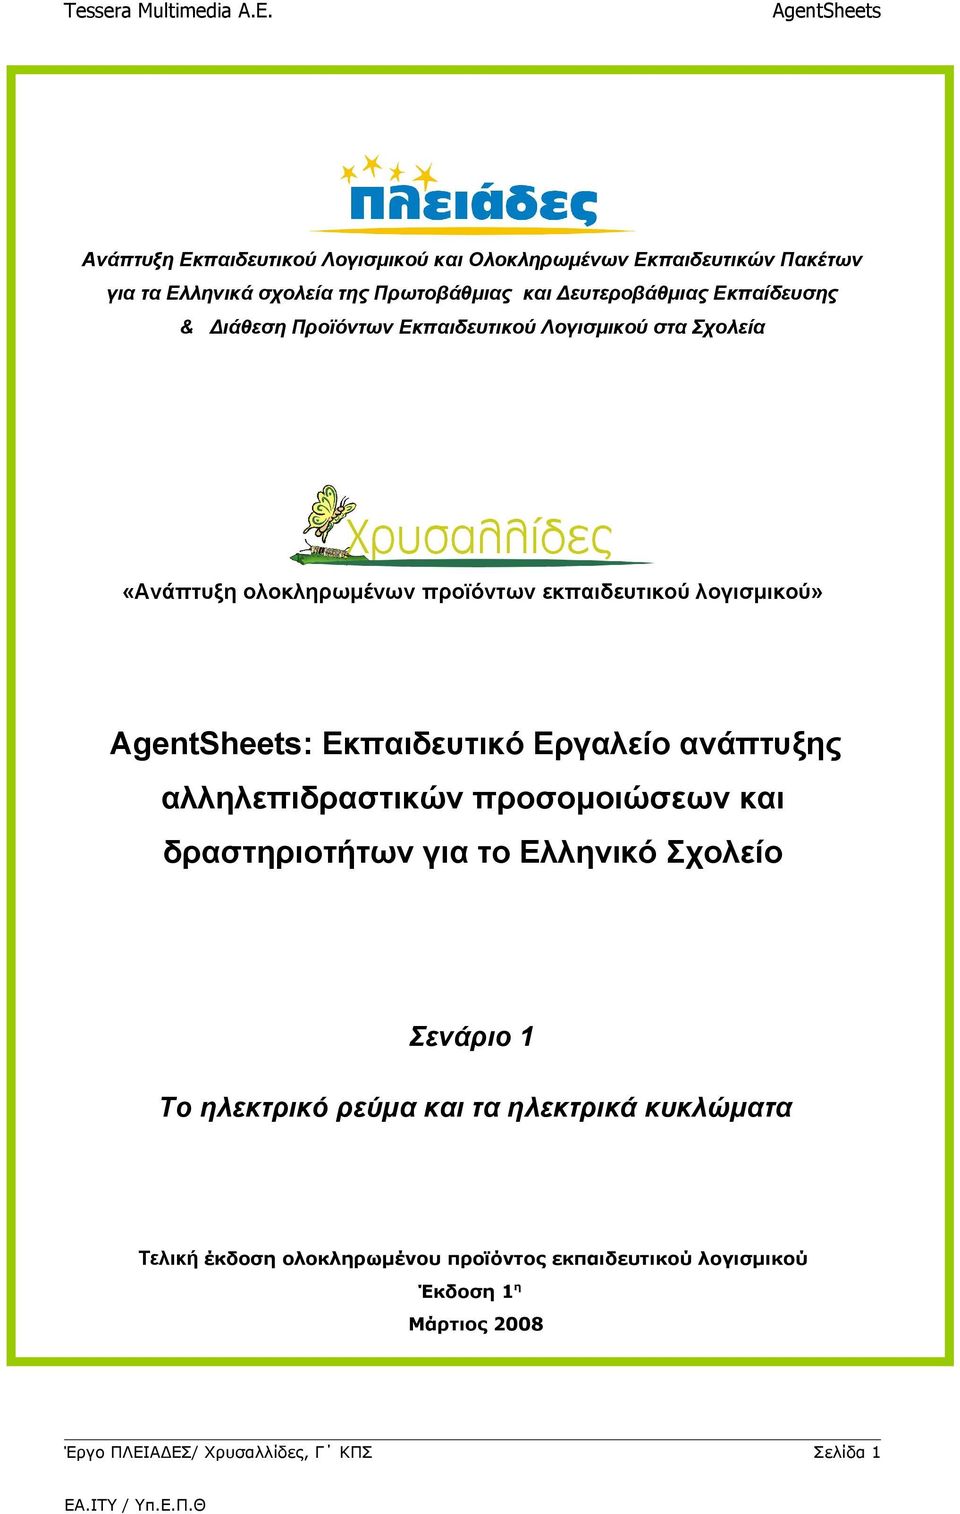 Εκπαιδευτικό Εργαλείο ανάπτυξης αλληλεπιδραστικών προσομοιώσεων και δραστηριοτήτων για το Ελληνικό Σχολείο Σενάριο 1 Το ηλεκτρικό ρεύμα και